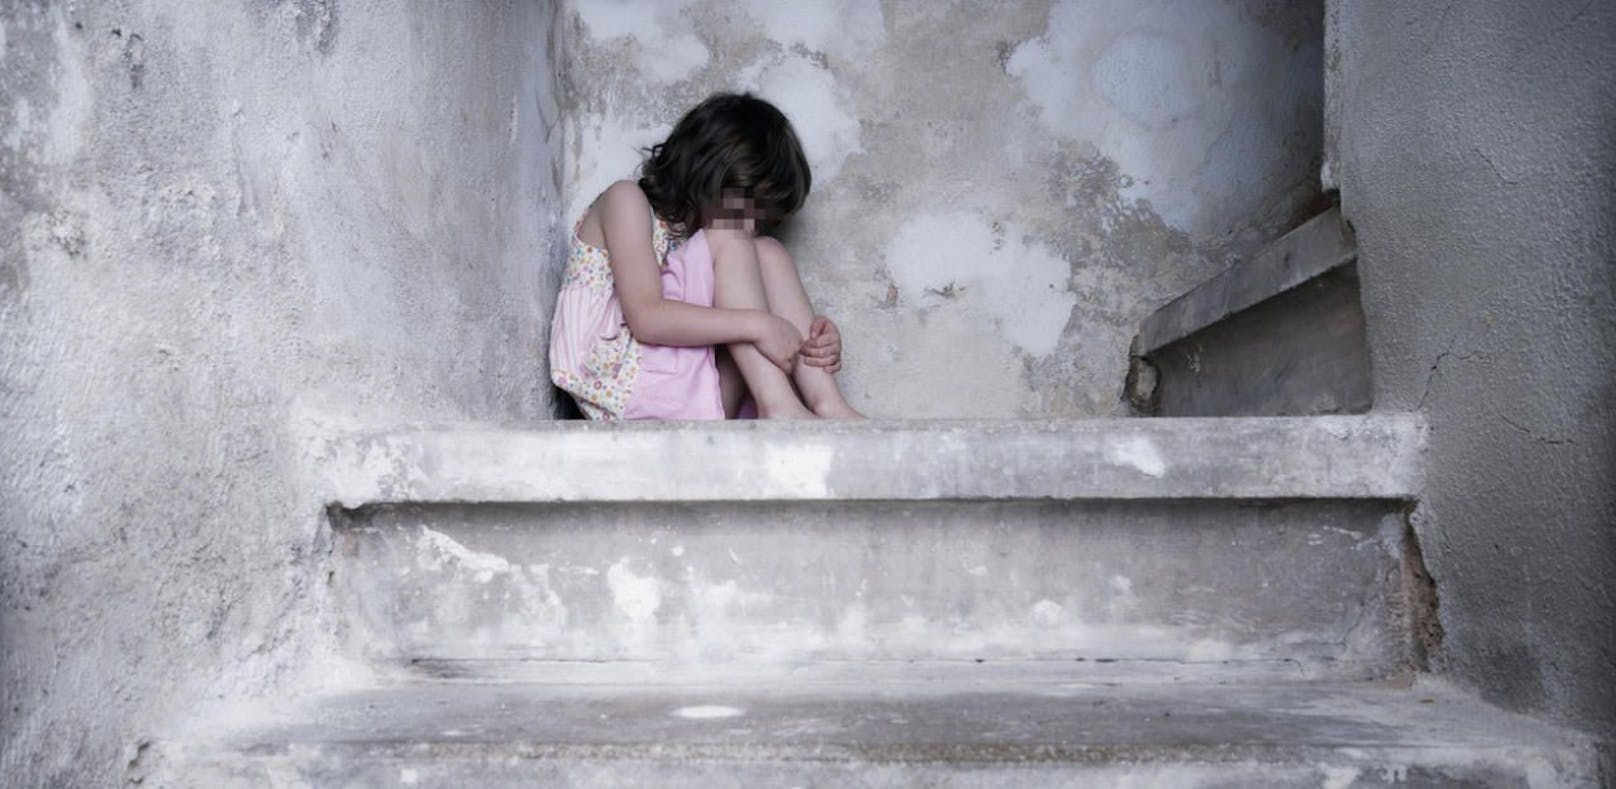 Ein kleines Mädchen wurde sexuell missbraucht